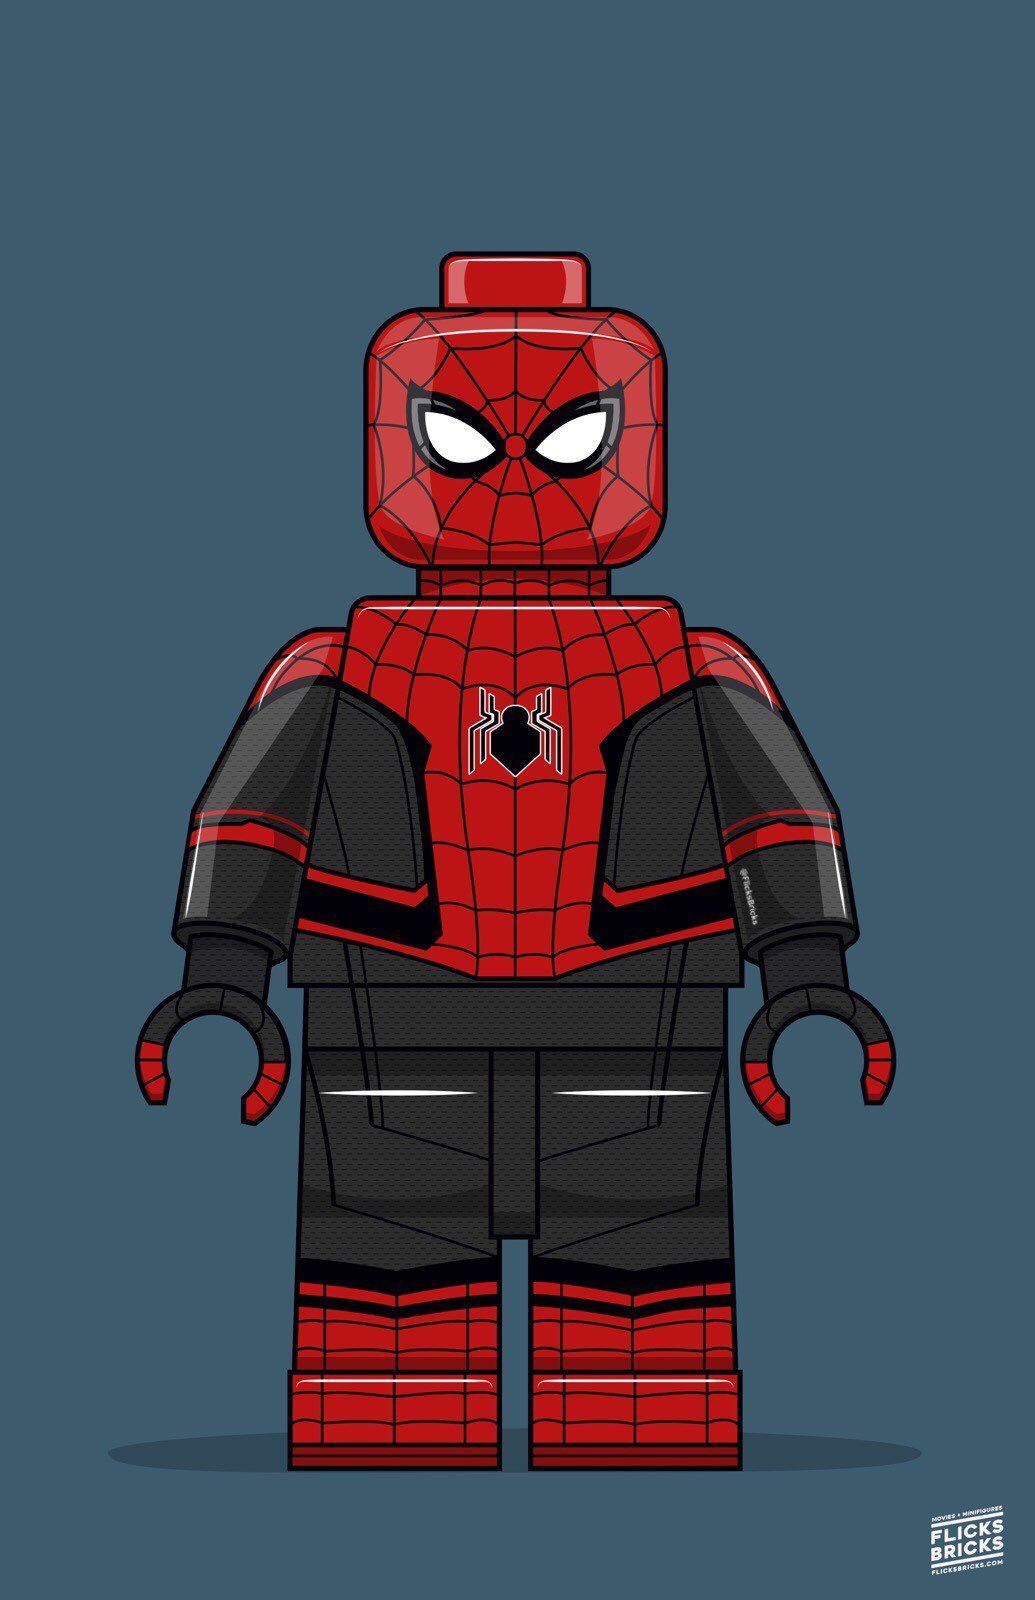 FlicksBricks: Spiderman!. Custom Lego Art. Marvel. Far From Home Moviex17 Poster. Minifig Art Print by AtomTheArti. Lego poster, Lego art, Lego spiderman